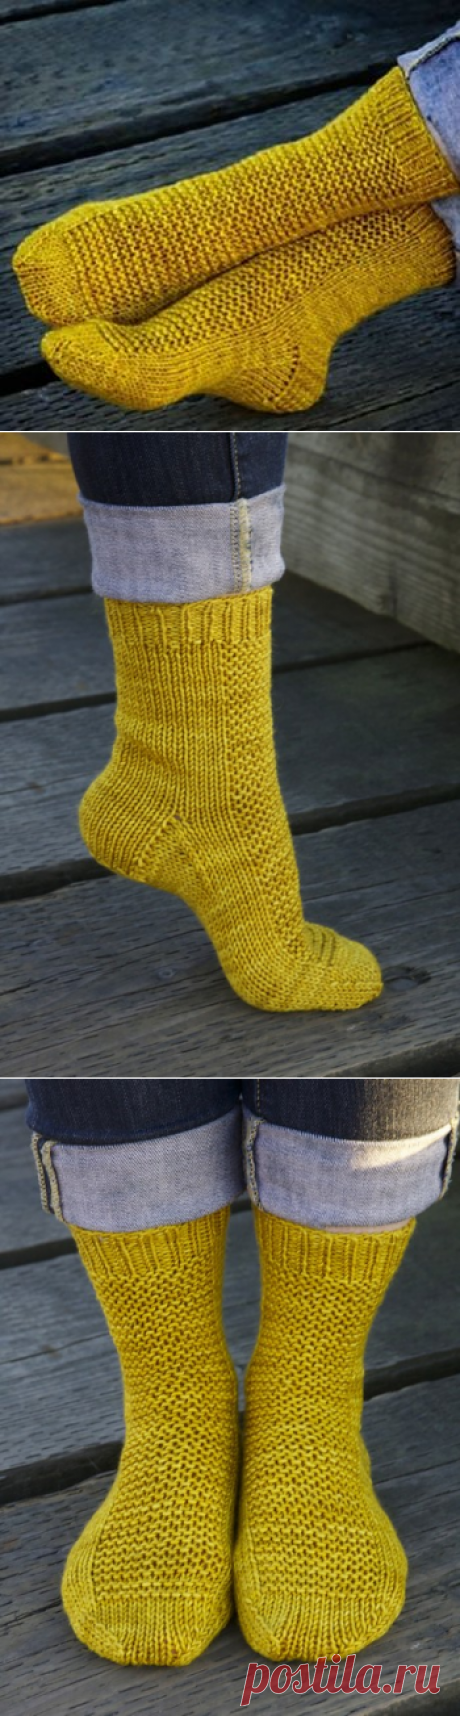 Вязаные спицами носки RYE для всей семьи, Вязание для детей